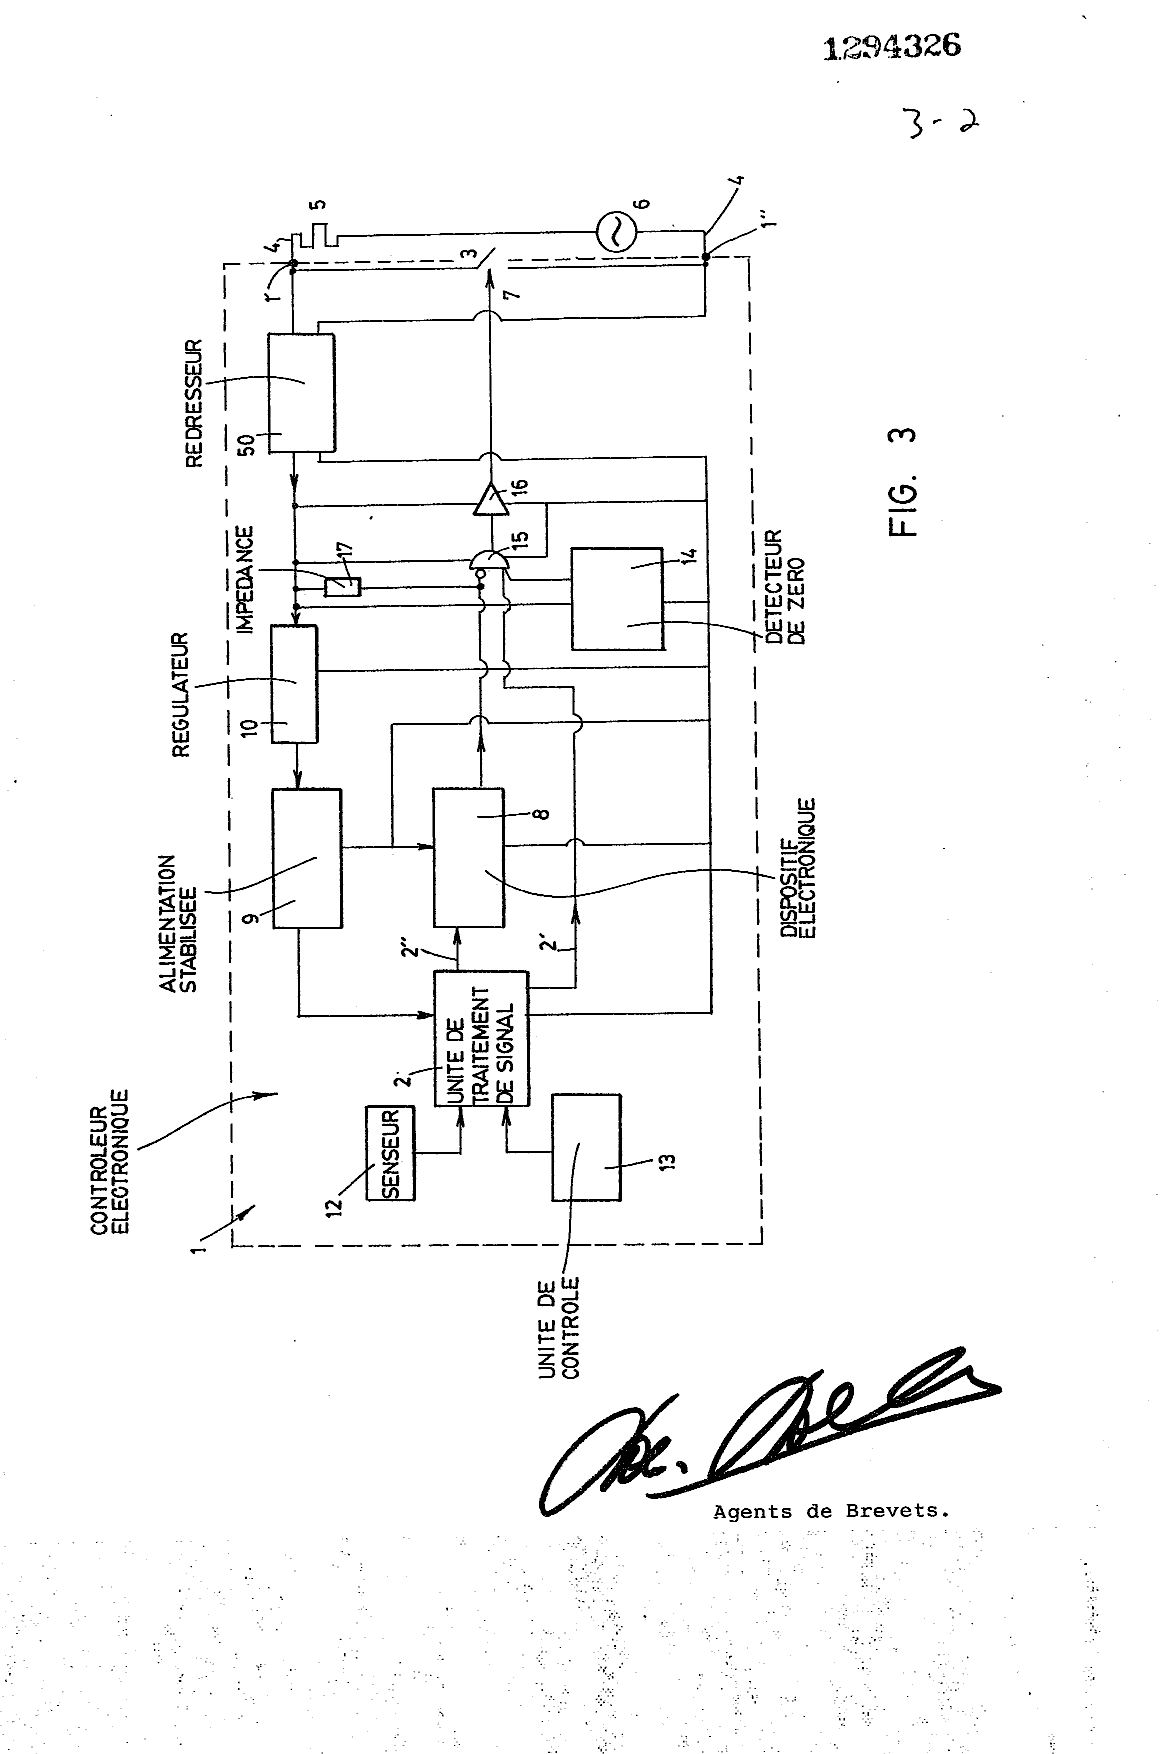 Document de brevet canadien 1294326. Dessins 19940108. Image 2 de 3